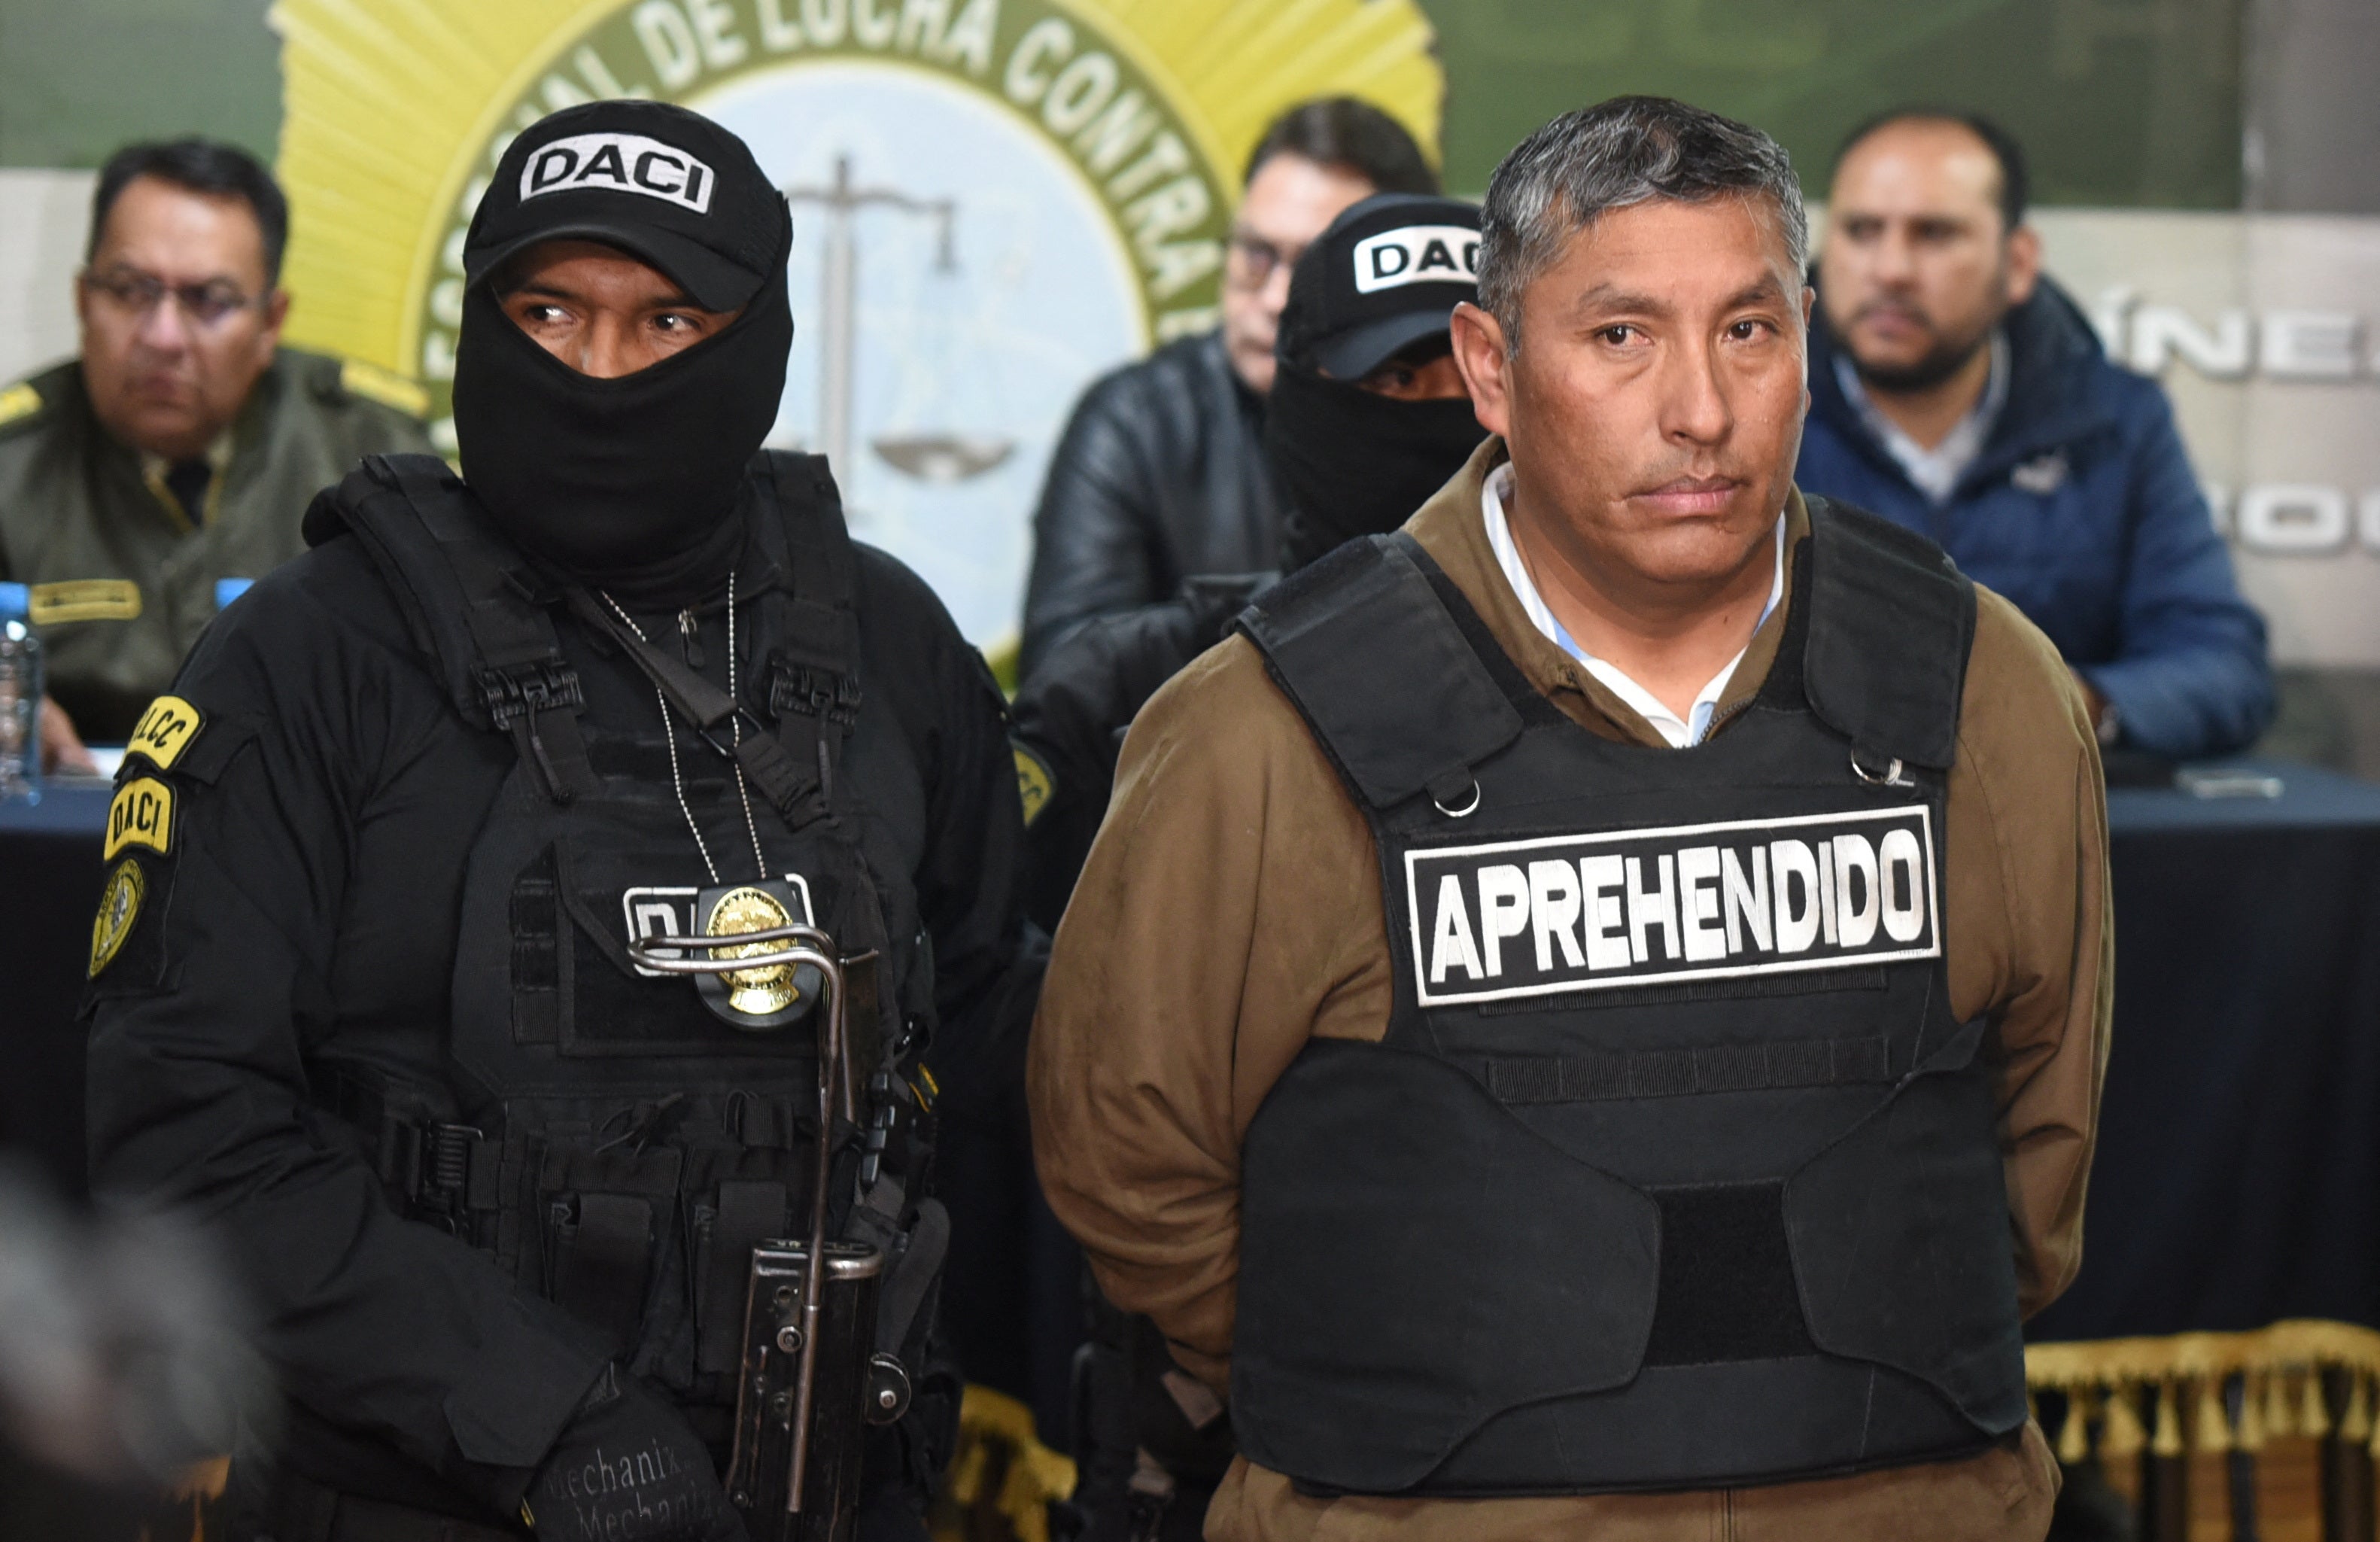 ボリビアのフアン・アルネス・サルバドール中将が、ラパスでクーデター未遂容疑で当局に逮捕された後、パレードを行った